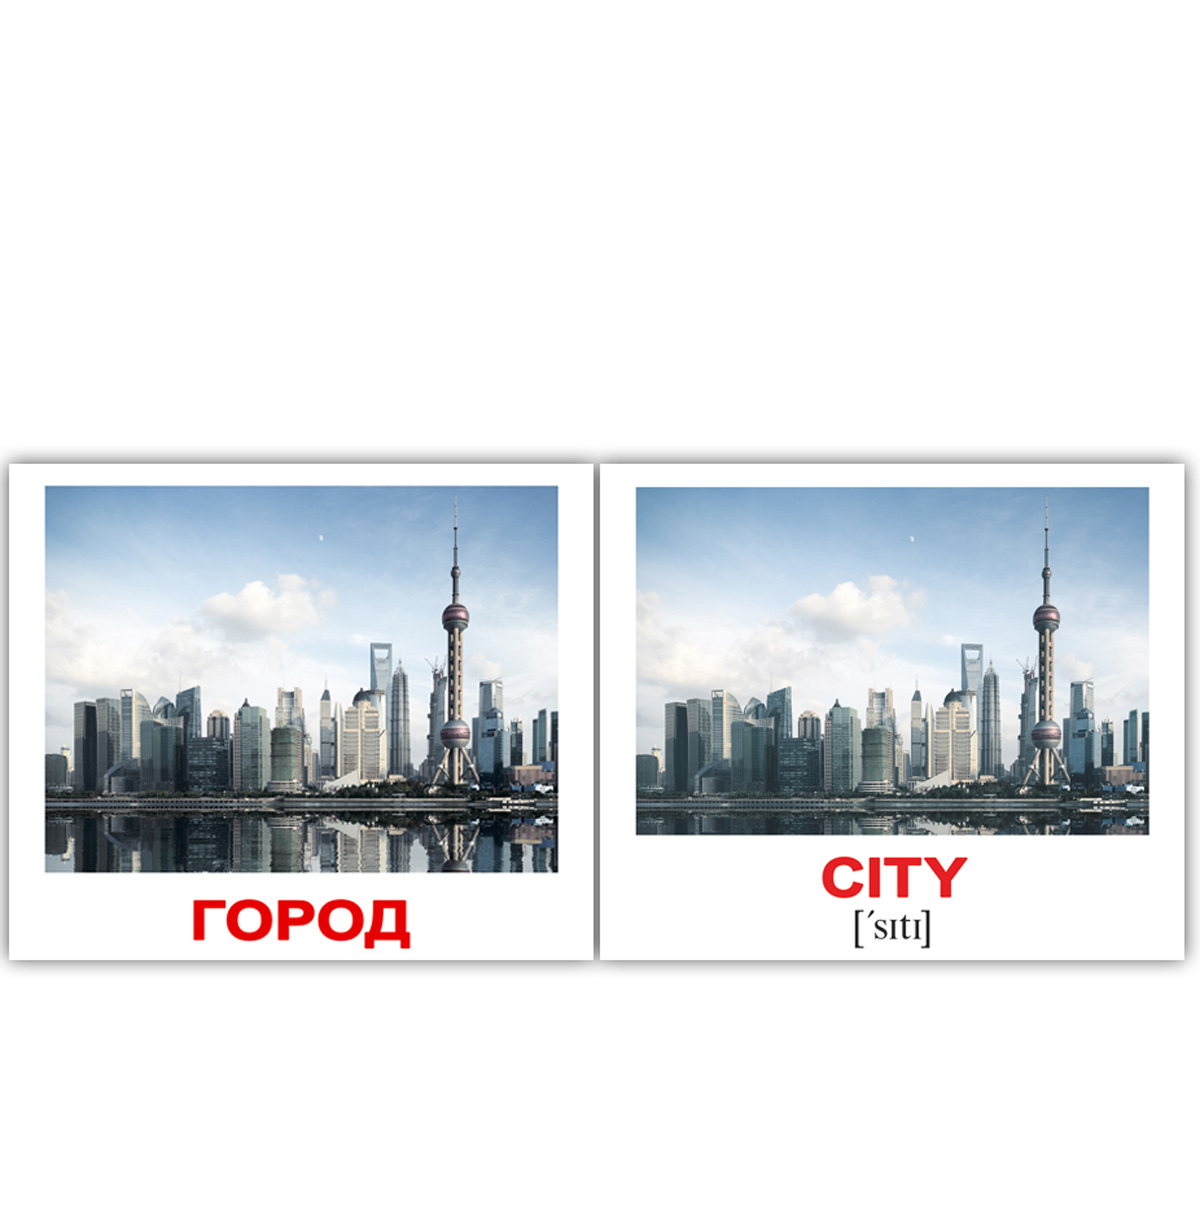 Картки Домана міні російсько-англійські  'Місто / City'